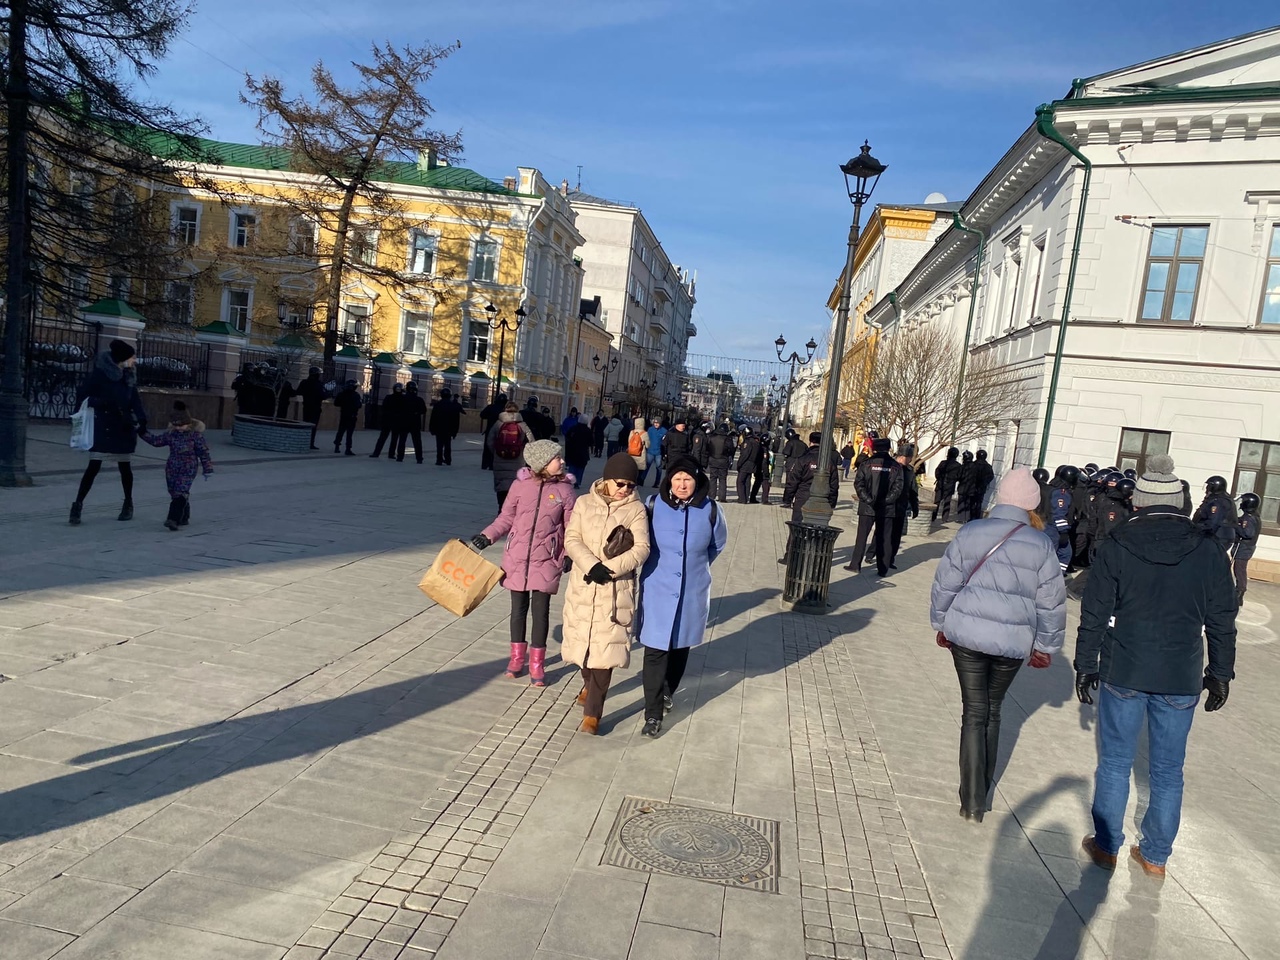 Торговый центр “Канавинский дворик” хотят продать за 200 млн рублей